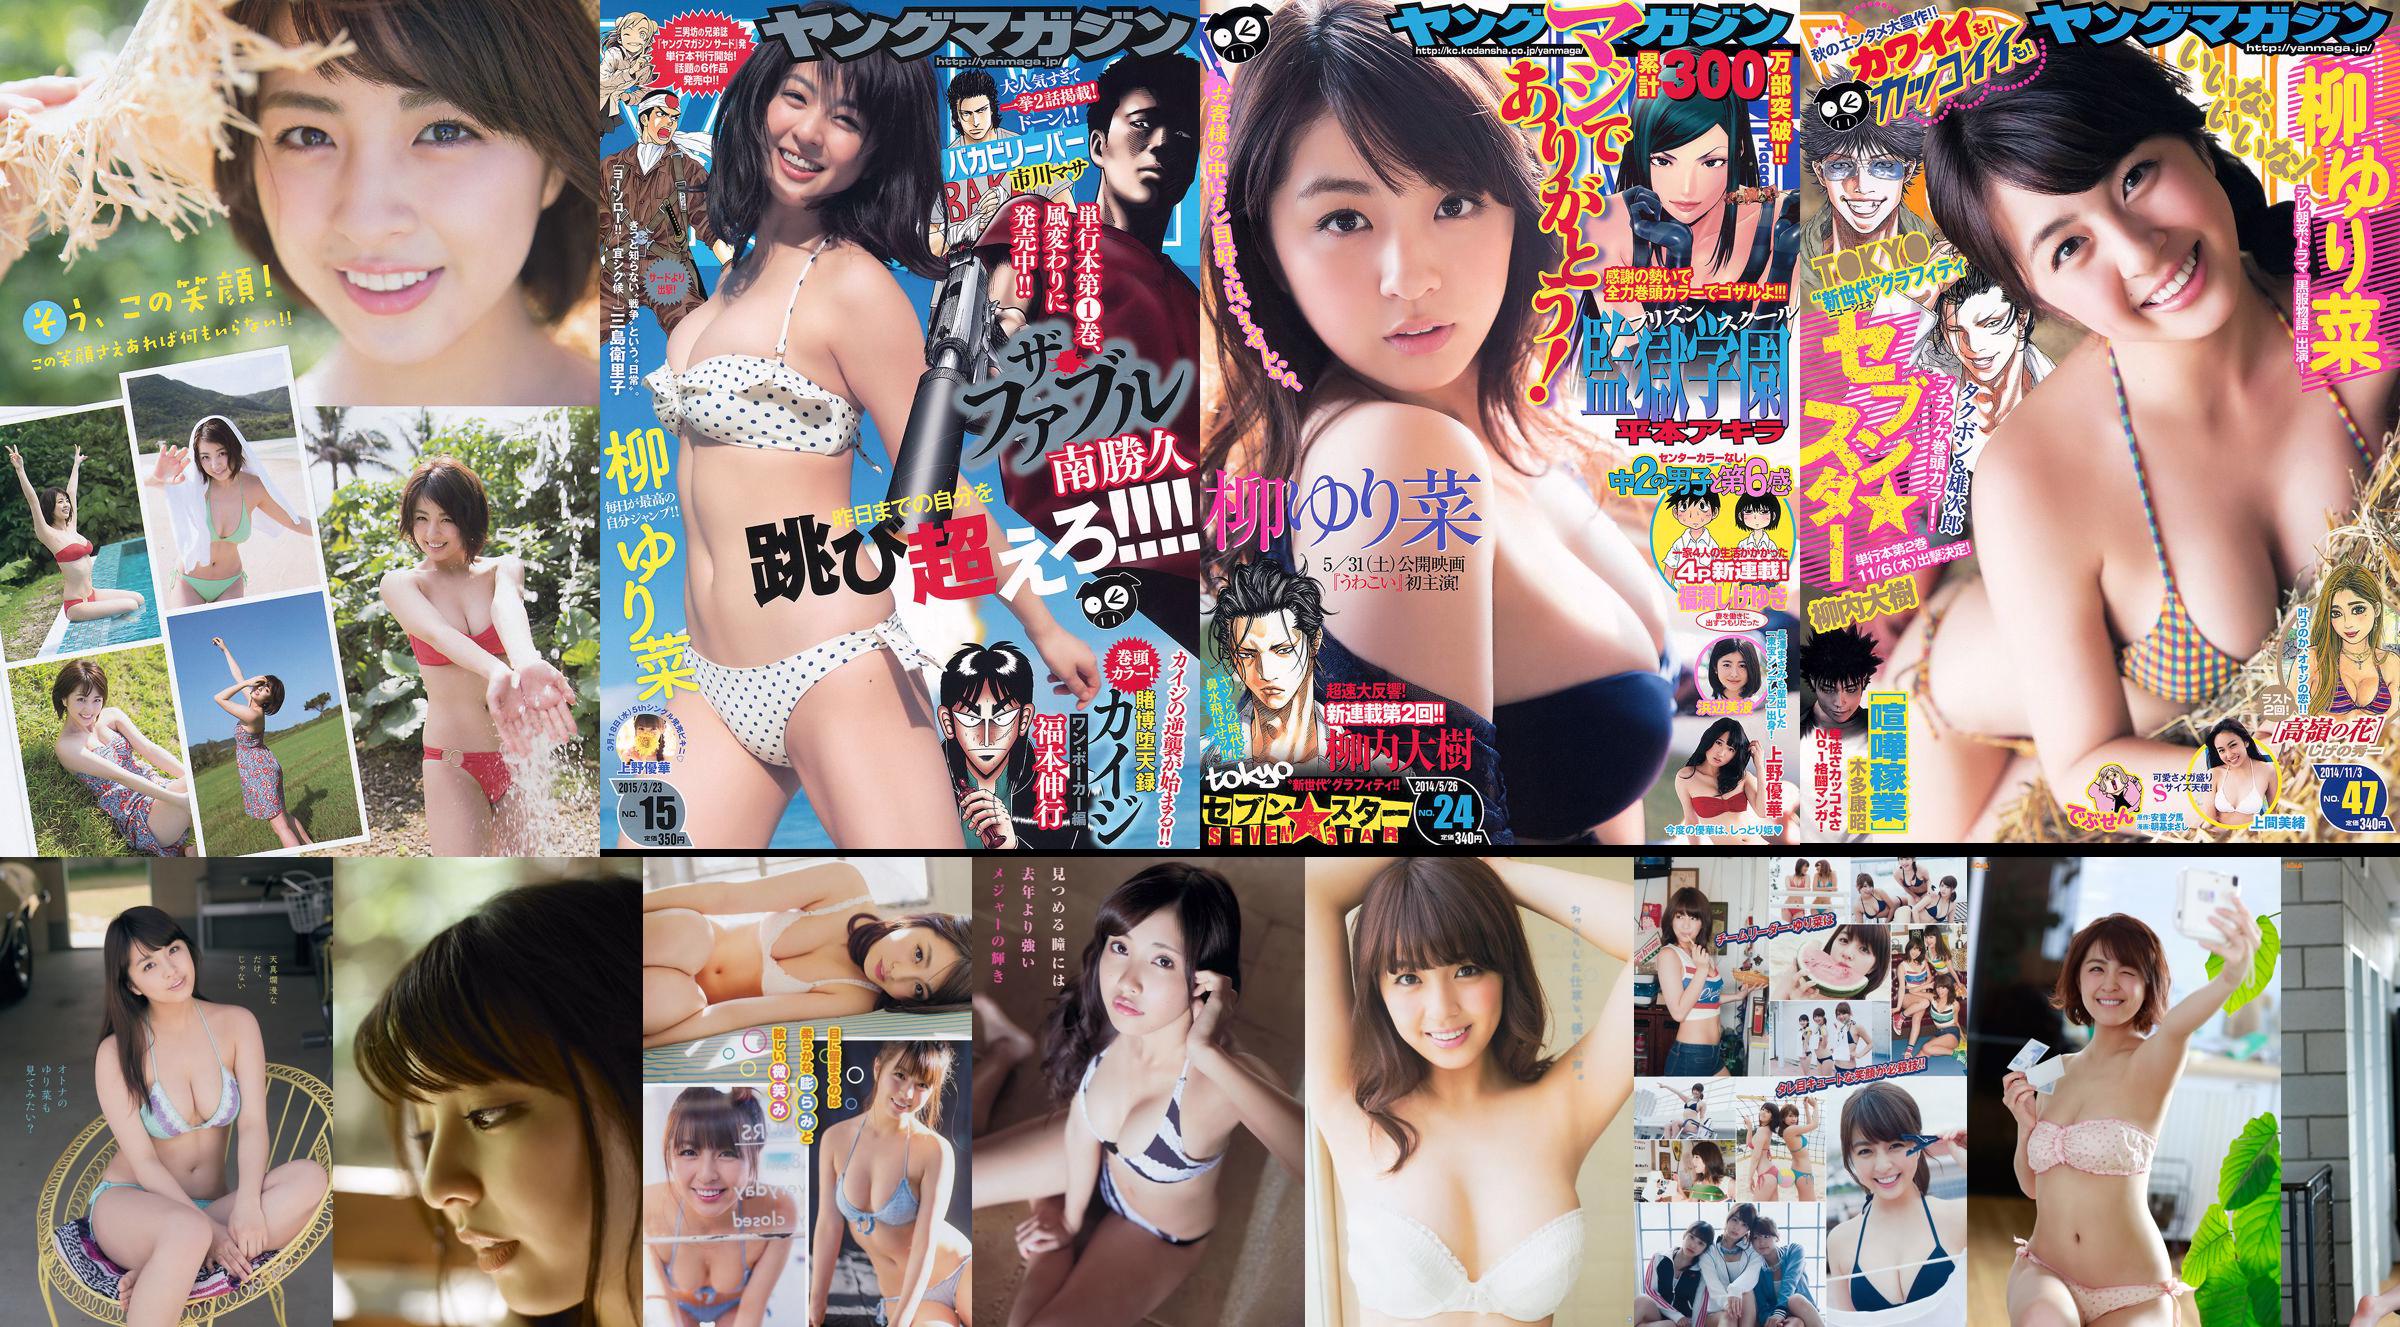 [Young Magazine] Rina Yanagi Mio Uema 2014 Magazine photo n ° 47 No.629272 Page 1